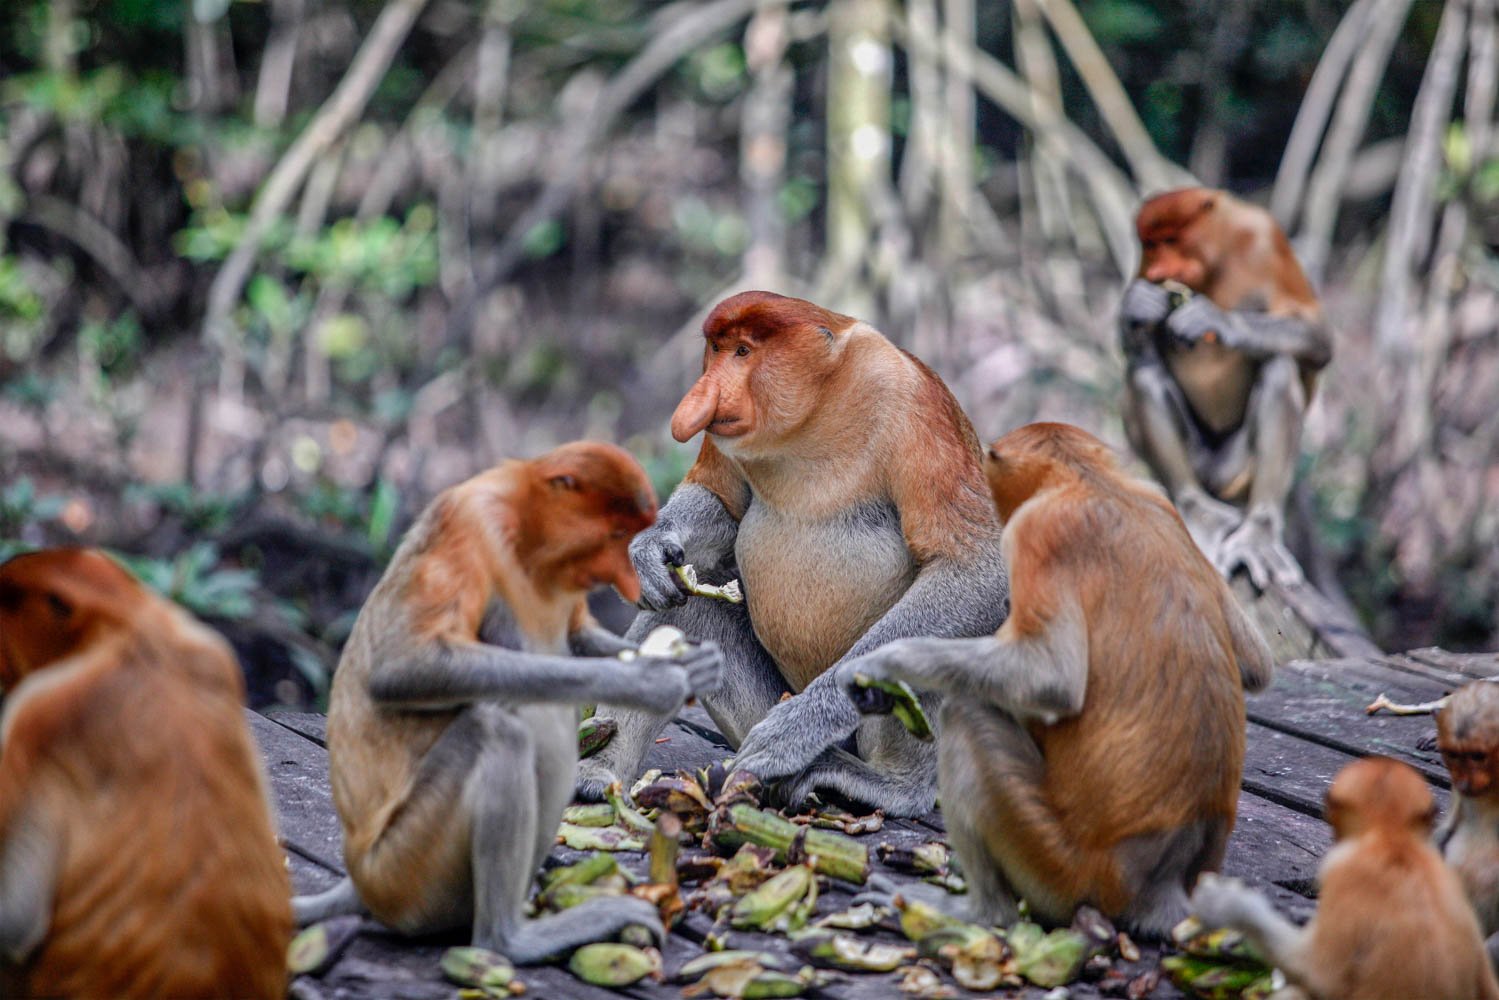 Sejumlah bekantan (Nasalis larvatus) menikmati di Kawasan Konservasi Mangrove dan Bekantan, Tarakan, Kalimantan Utara. Di KKMB, bekantan hidup secara berkelompok dengan jumlah populasi sekitar 45 ekor. Primata tersebut juga memliki sifat yang berbeda dengan jenis primata lainnya. Bekantan bukan termasuk monyet yang agresif sehingga membuat wisatawan yang berkunjung di kawasan itu merasa nyaman untuk melihatnya langsung di habitatnya.